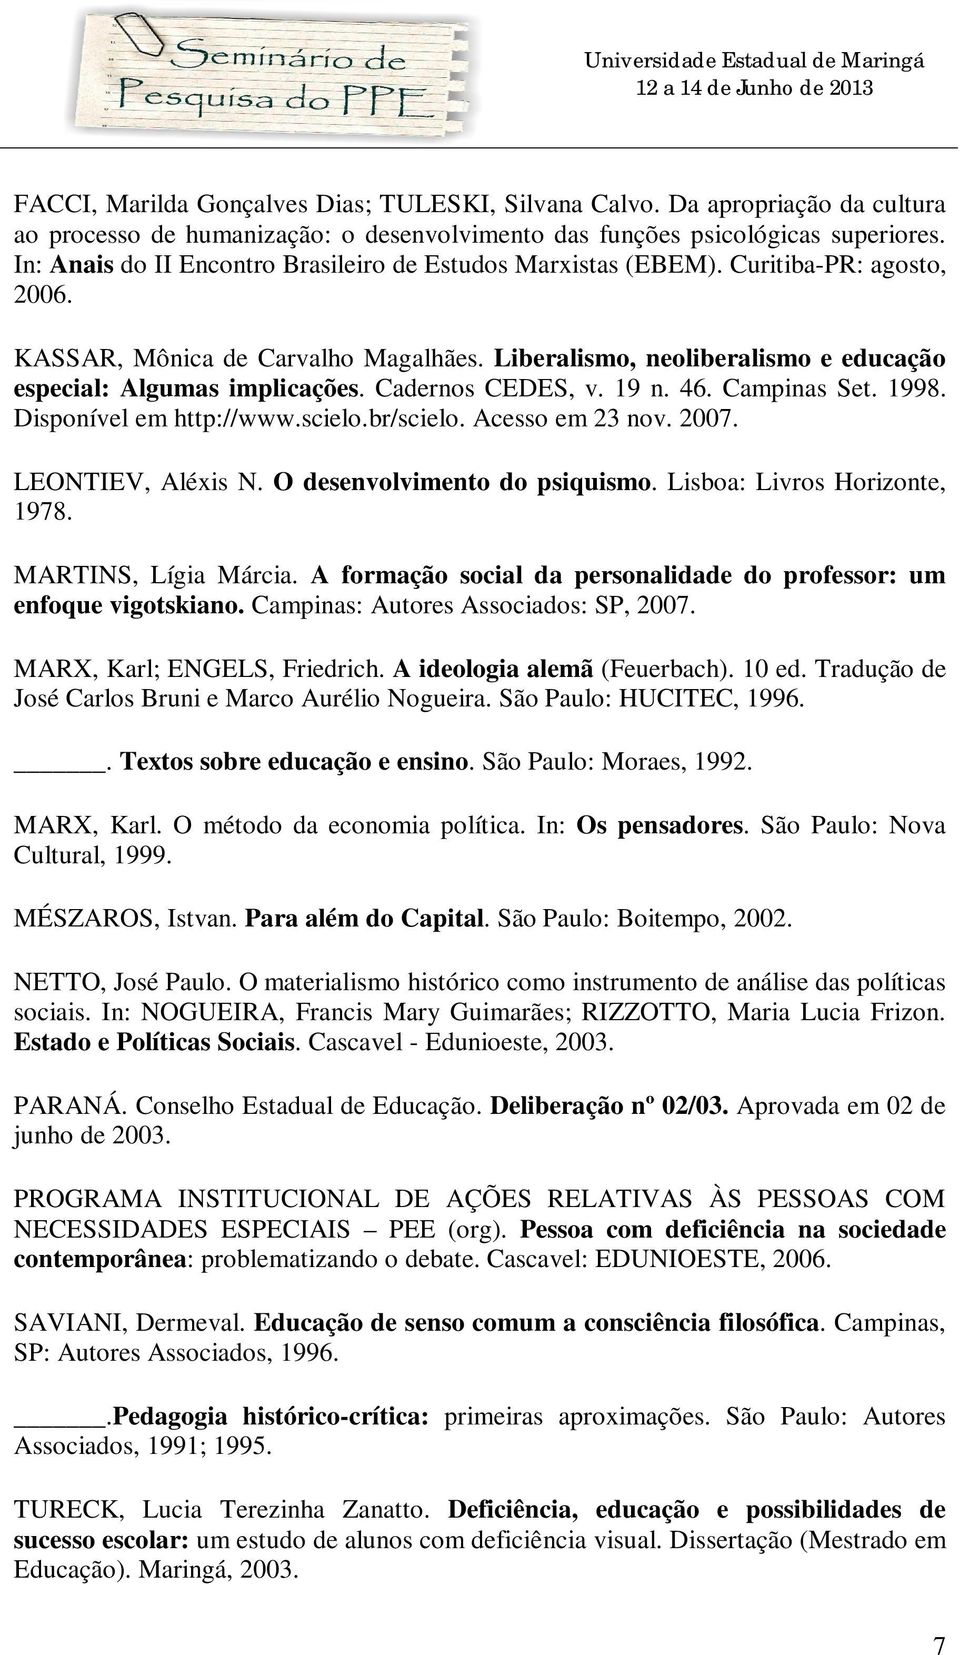 Cadernos CEDES, v. 19 n. 46. Campinas Set. 1998. Disponível em http://www.scielo.br/scielo. Acesso em 23 nov. 2007. LEONTIEV, Aléxis N. O desenvolvimento do psiquismo. Lisboa: Livros Horizonte, 1978.